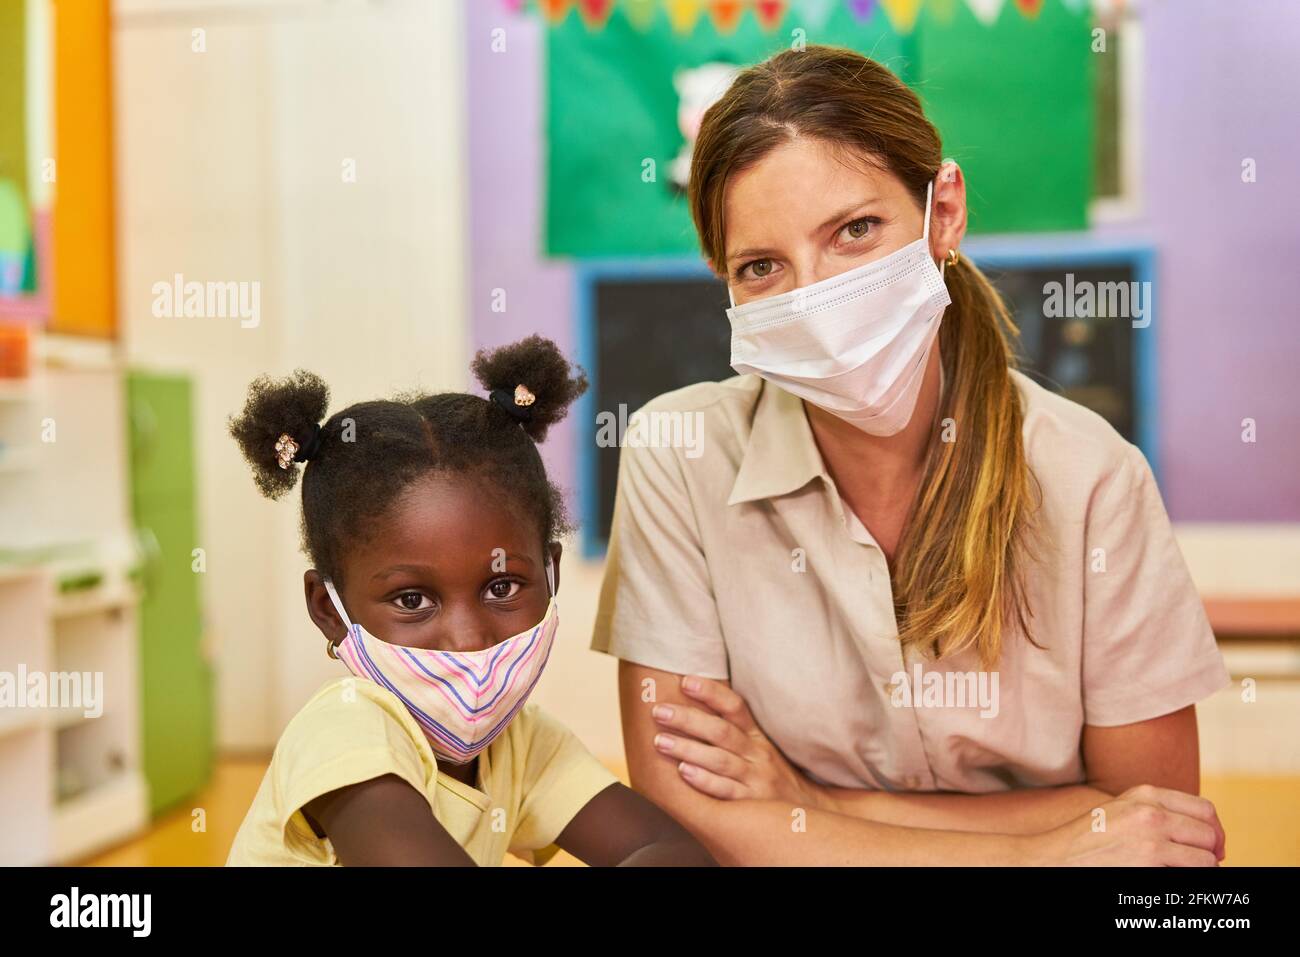 Fille africaine et éducatrice avec masque facial à la maternelle parce que De Covid-19 Banque D'Images